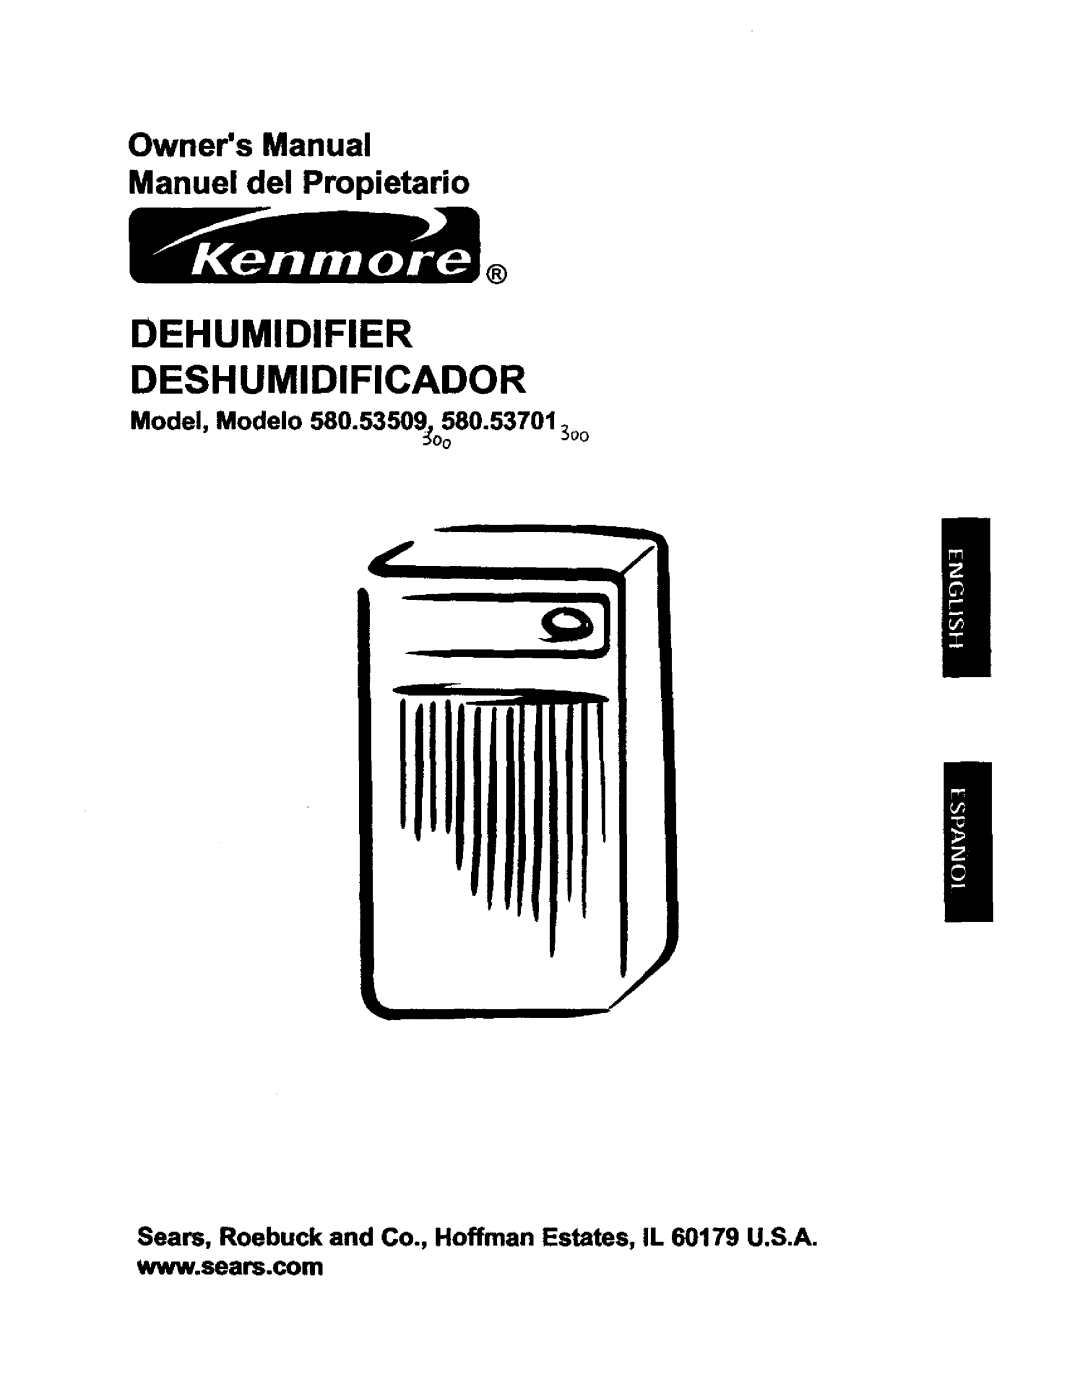 Kenmore owner manual Model, Modelo 580.53509 o580.537013o0, Dehumidifier Deshumidificador 